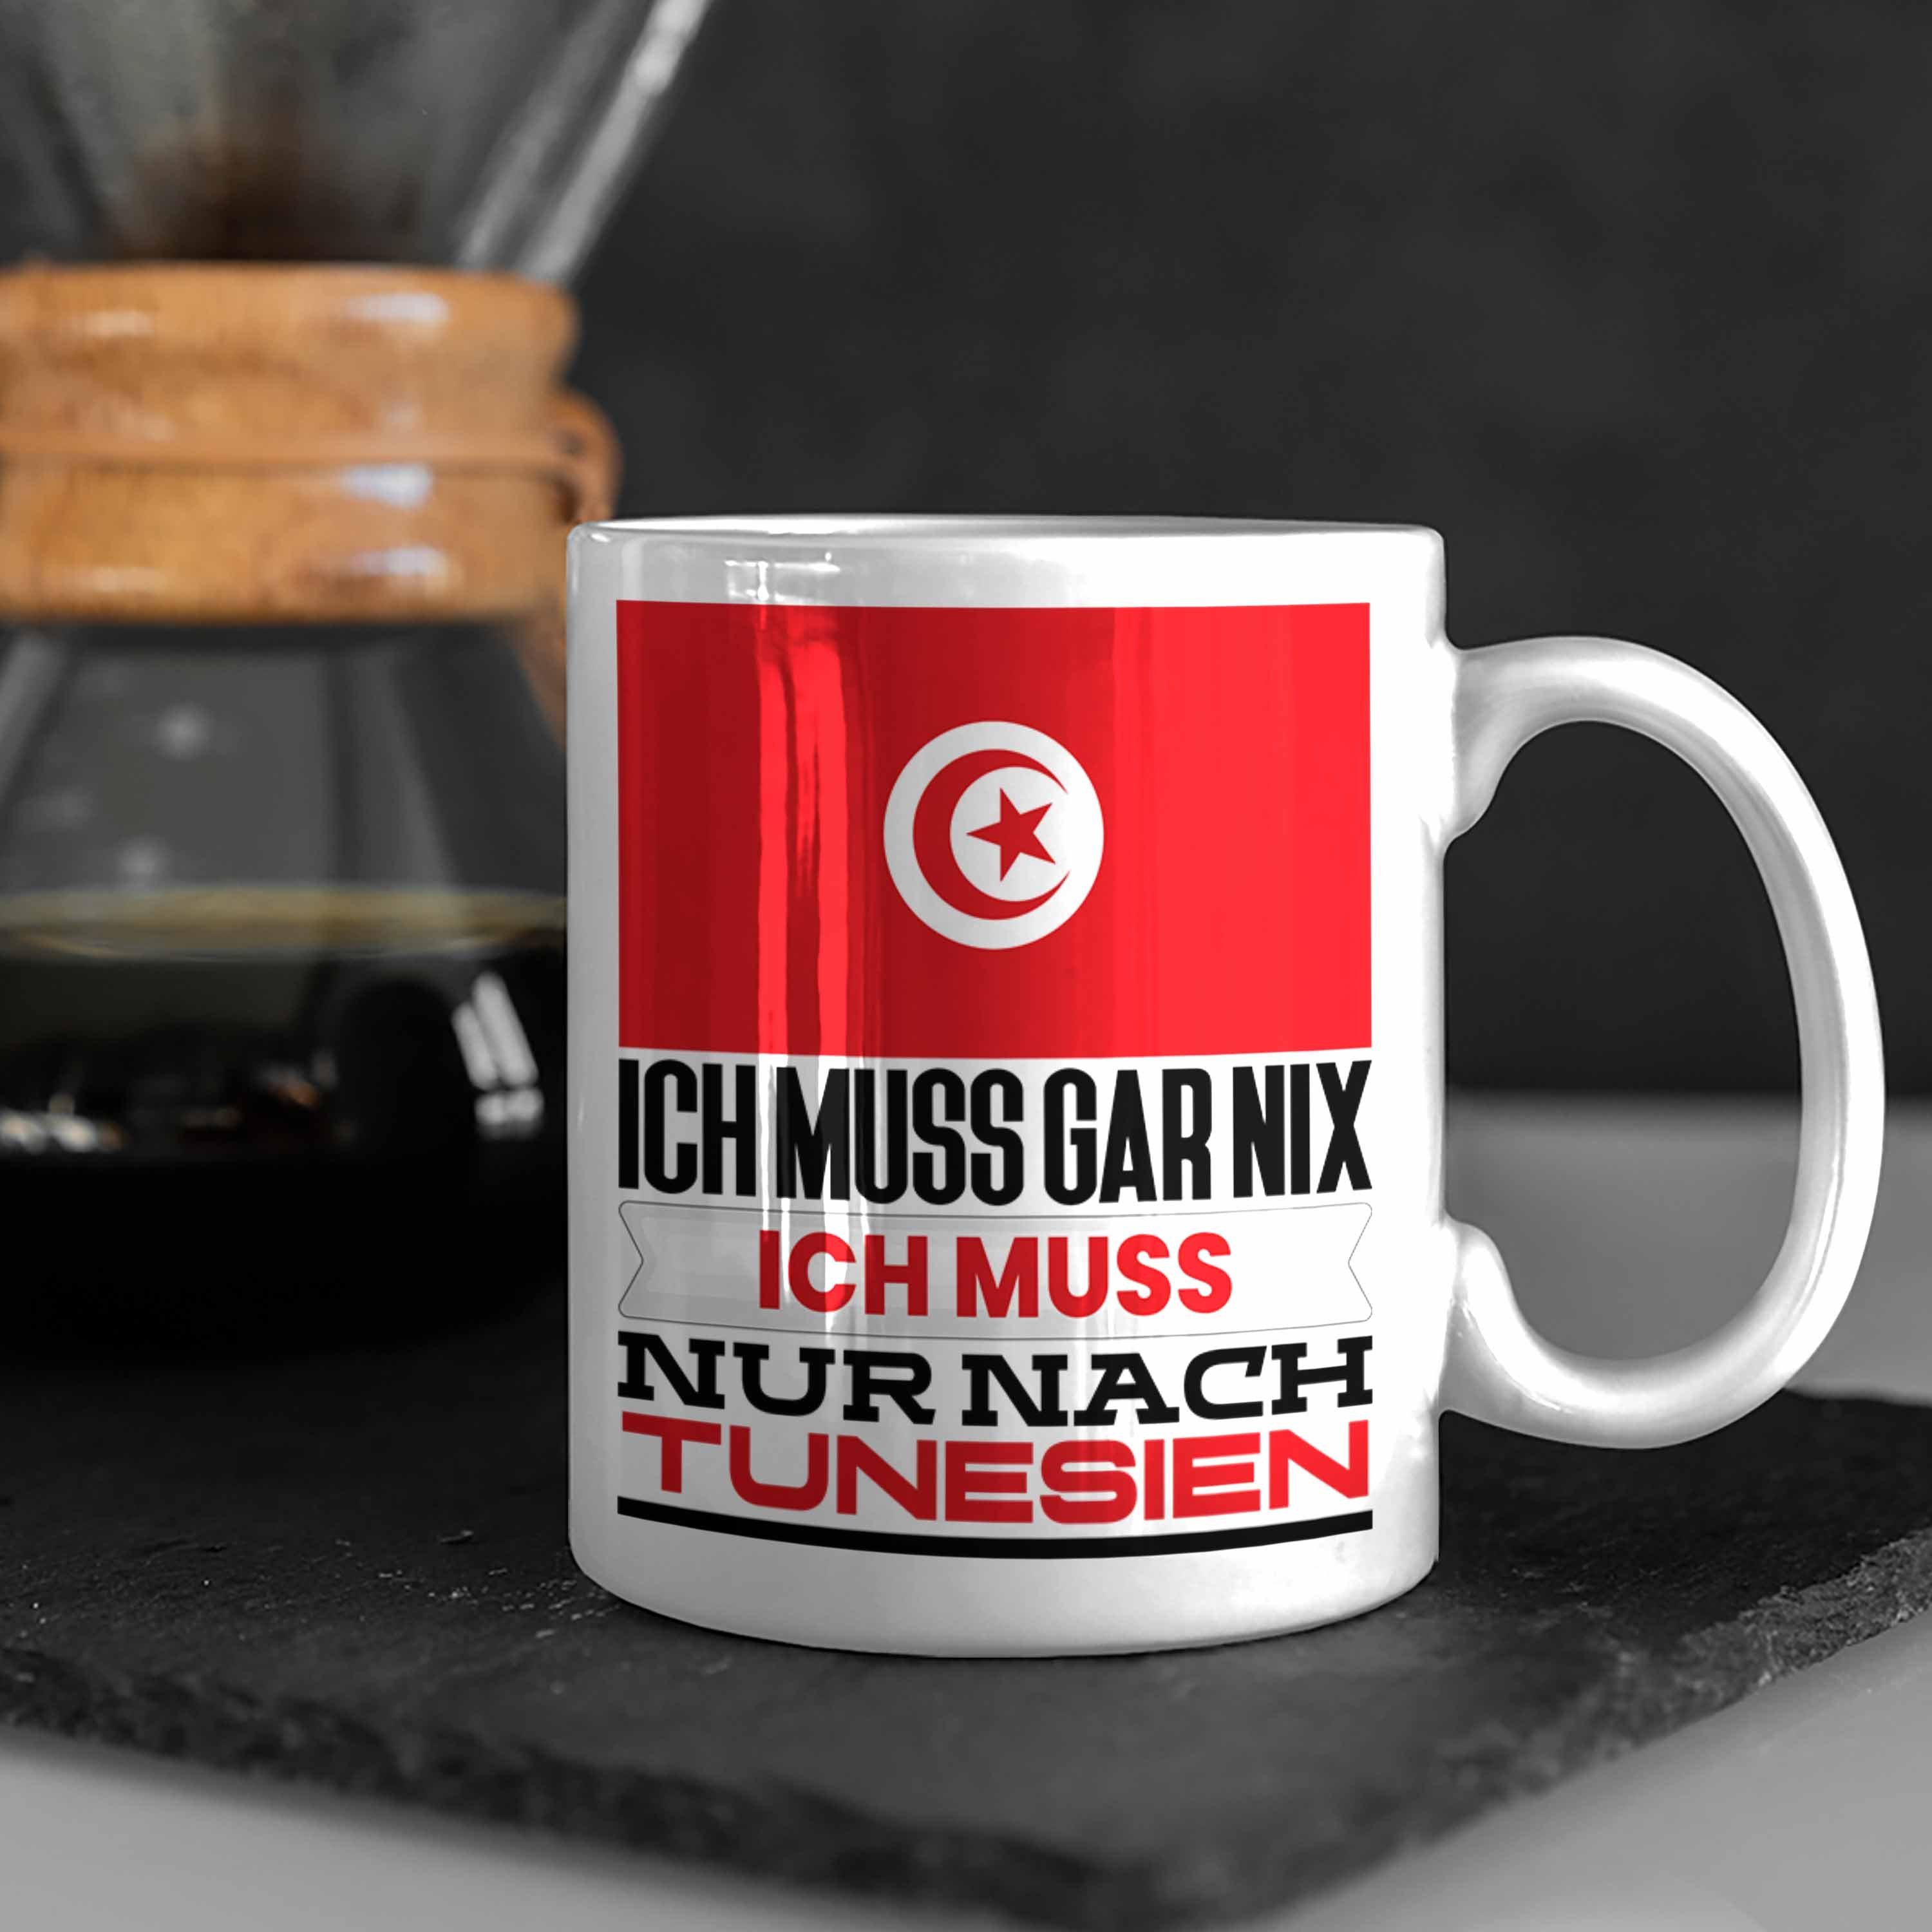 Trendation Tasse Tunesien Tunesen Geschenkidee Urlaub Geburtstag für Weiss Ich Geschenk Tasse